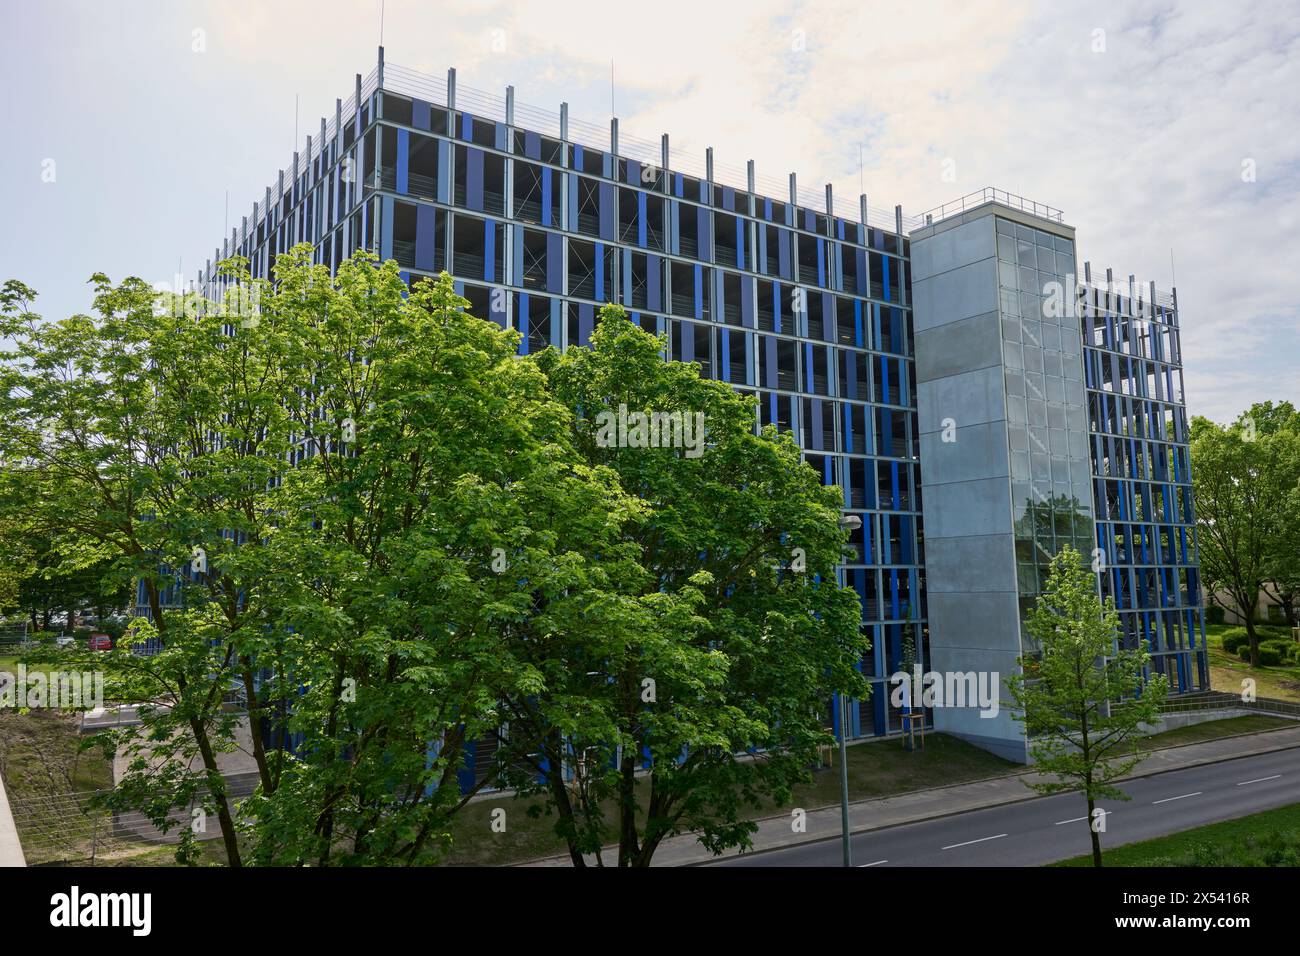 Die Essener Universität, Duisburg / Essen, Hat ein neues Parkhaus. Veröffentlichungen nur für redaktionelle Zwecke. Foto: IMAGO/FotoPrensa Foto Stock